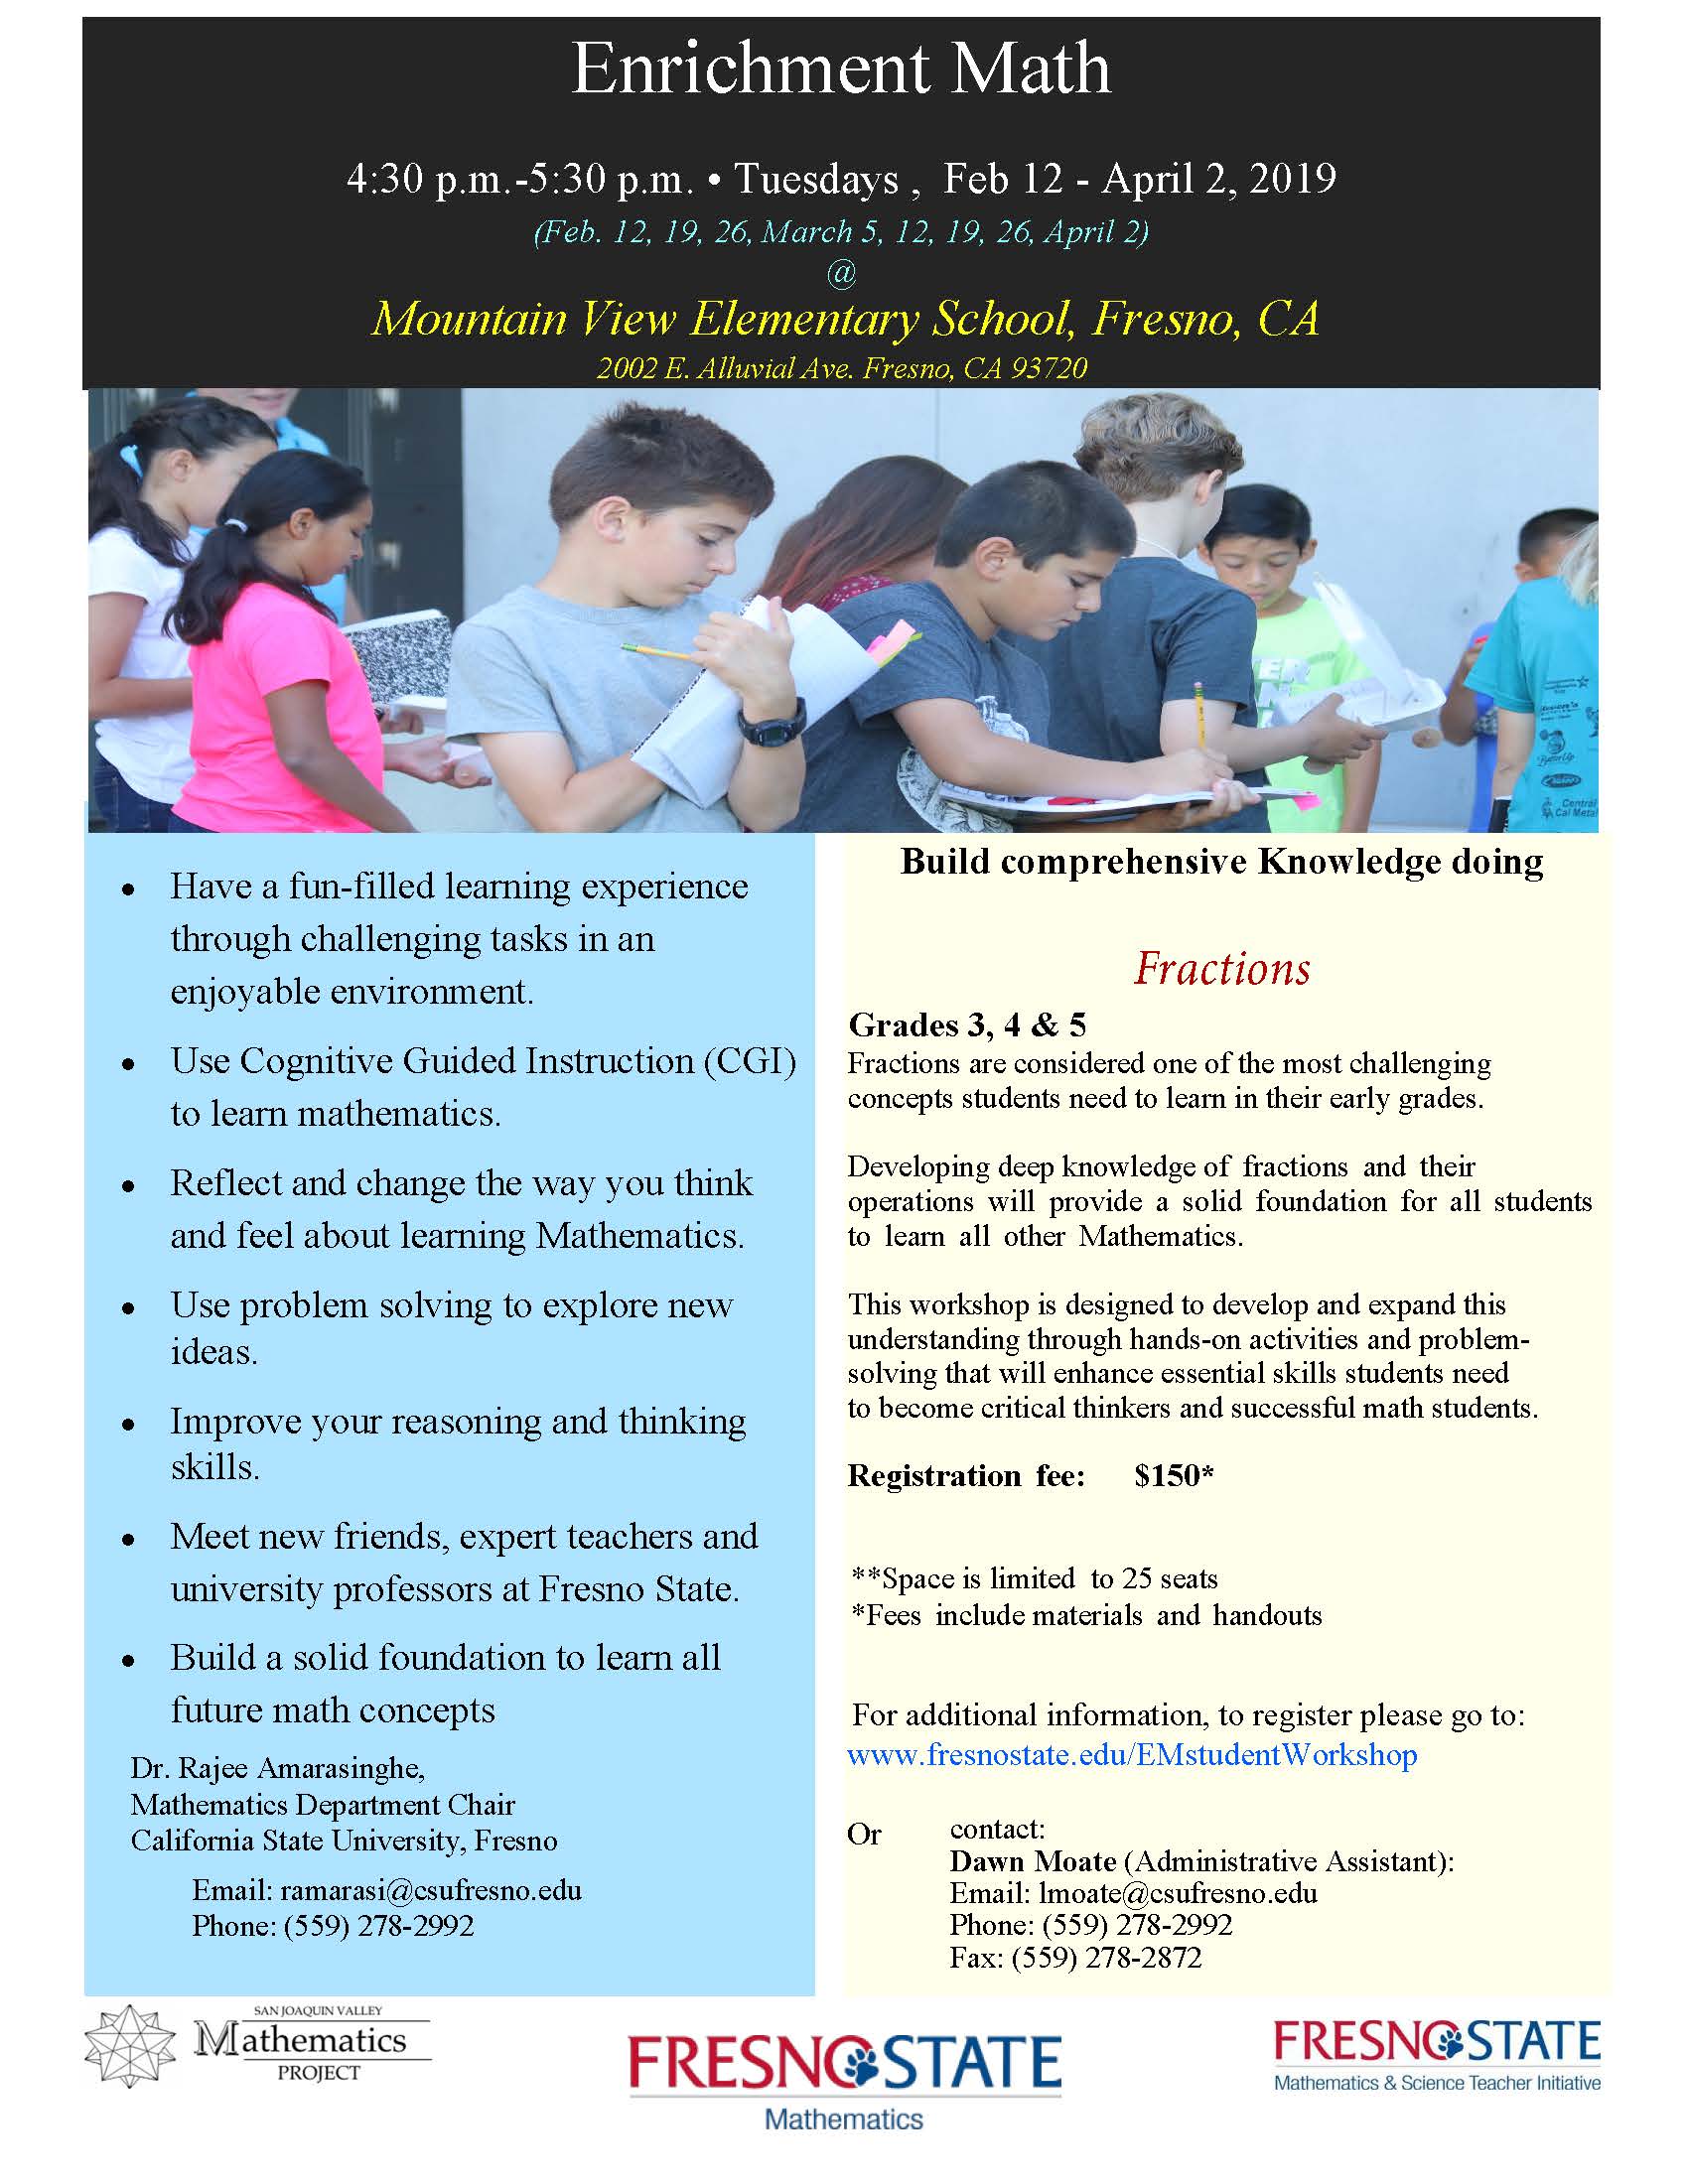 Enrichment Math Student Flyer 2019